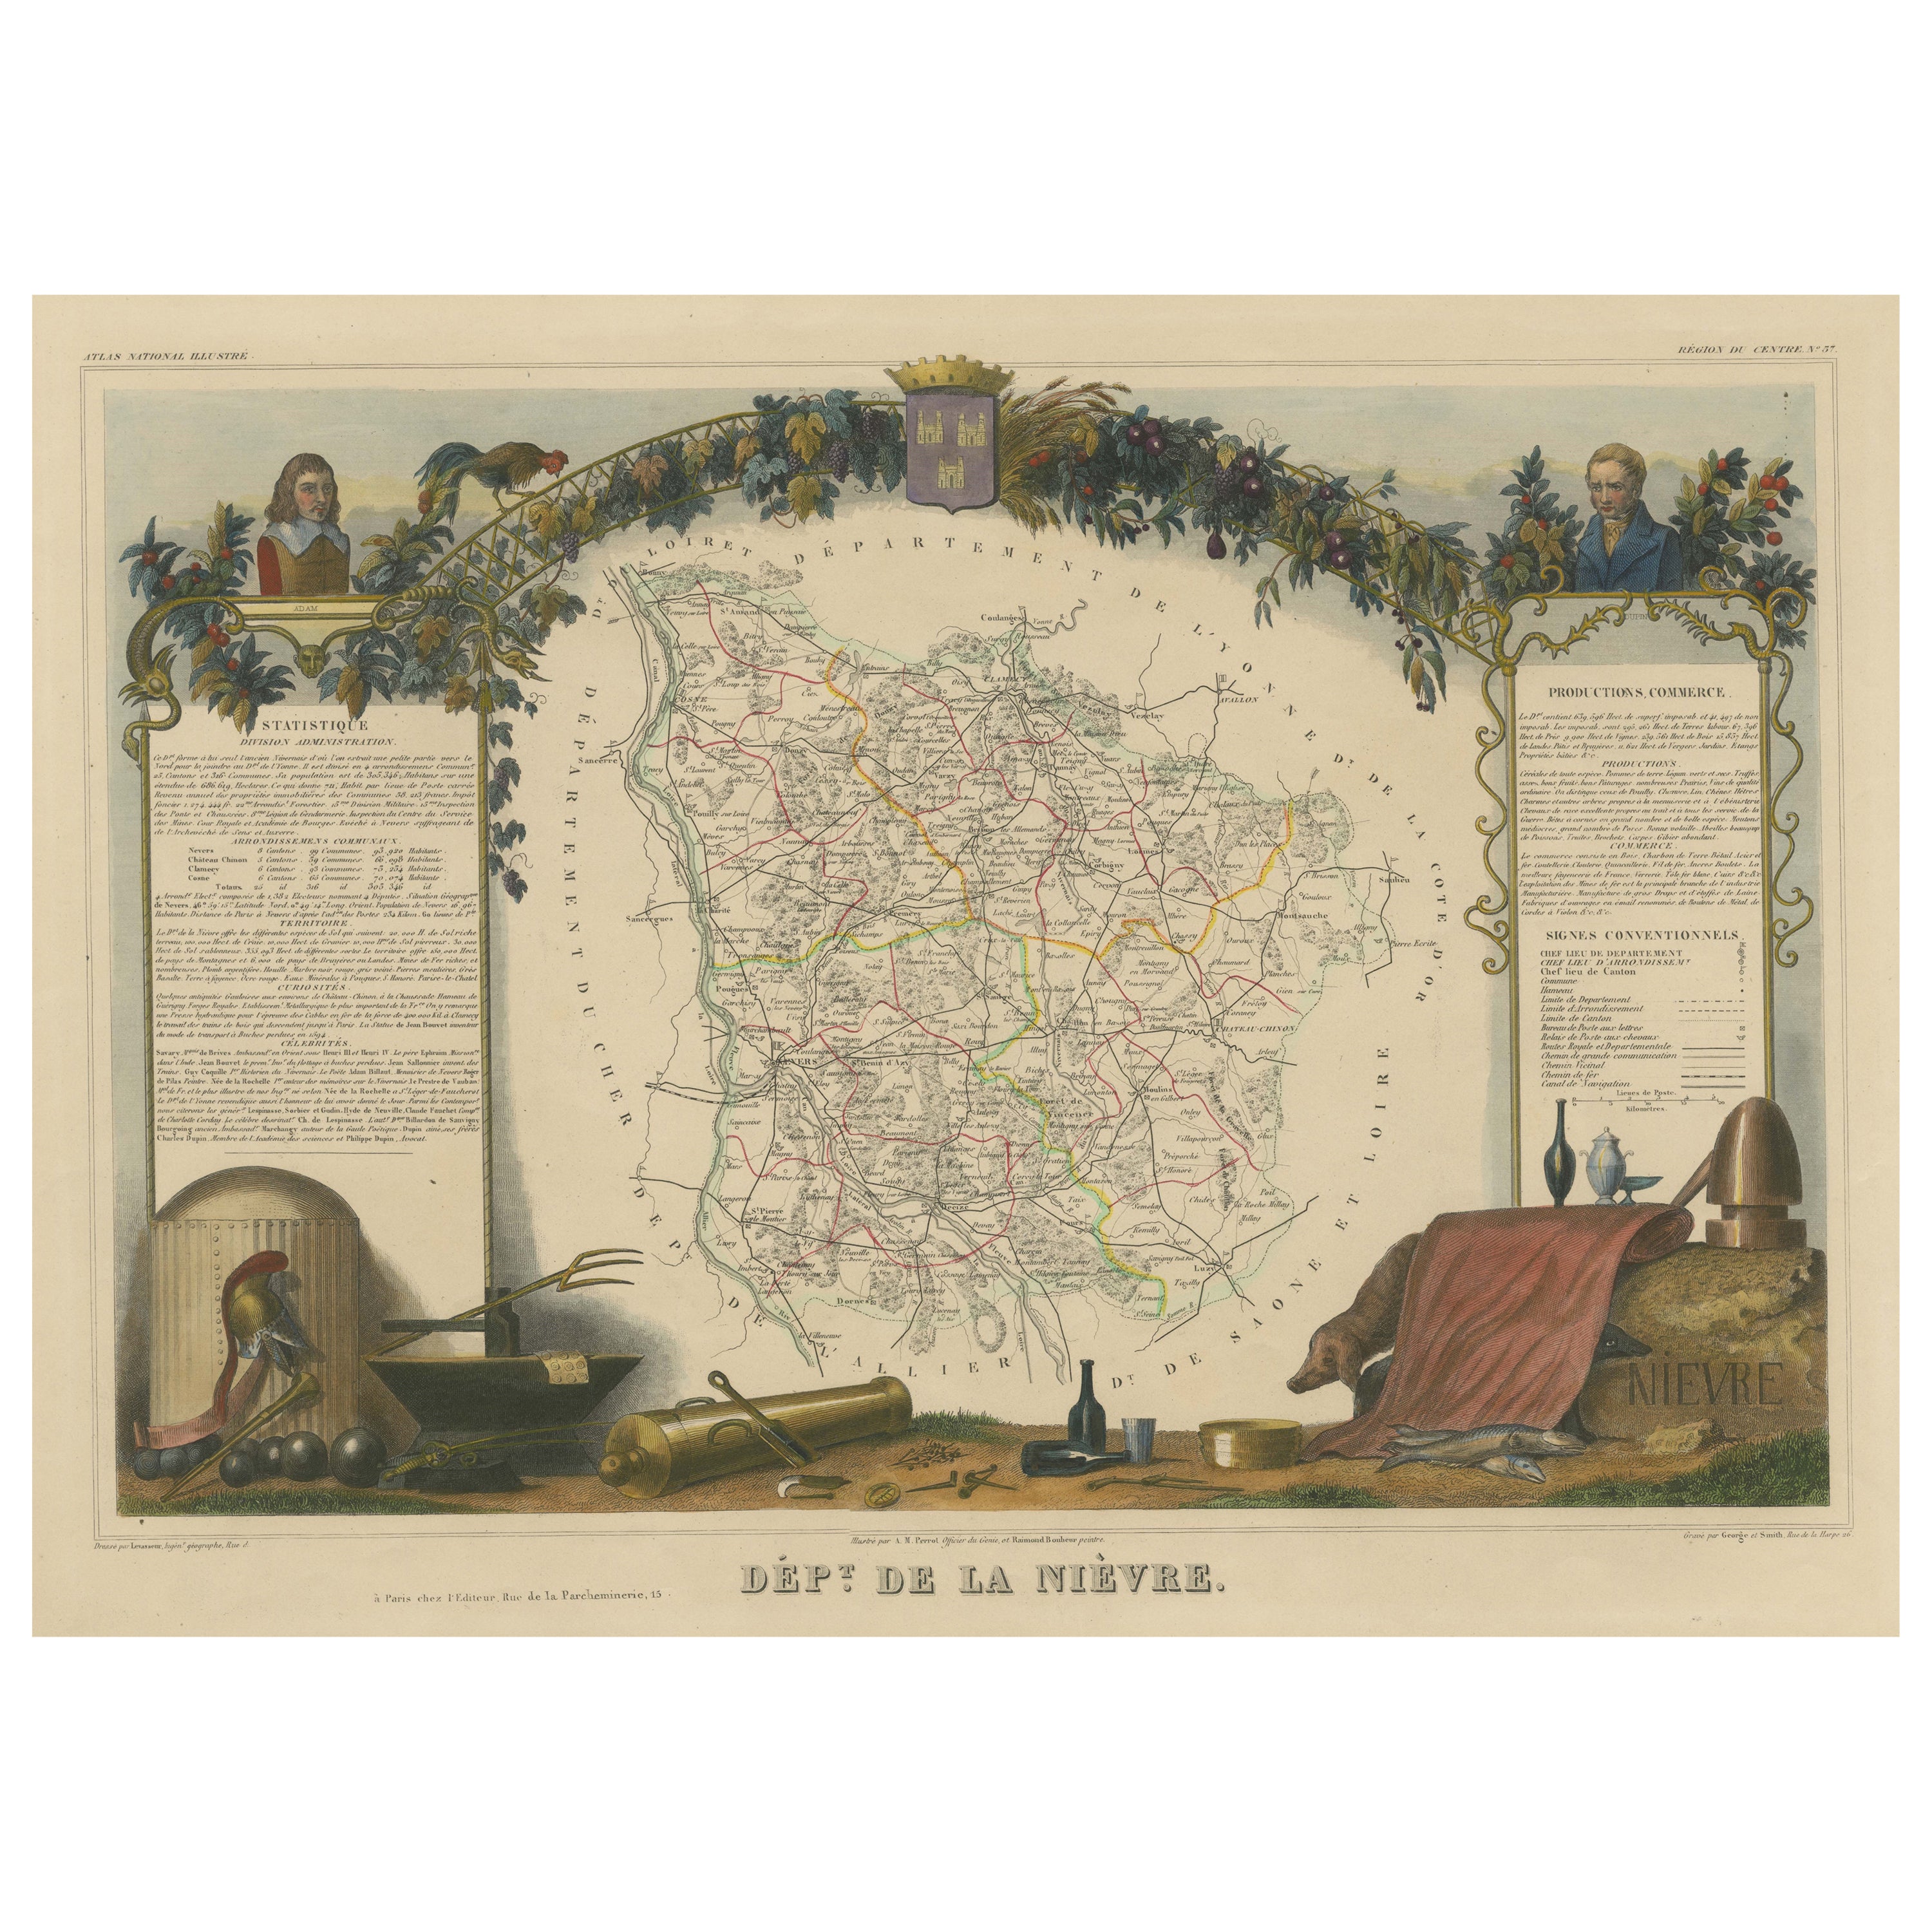 Handkolorierte antike Karte des Departements Nièvre, Frankreich